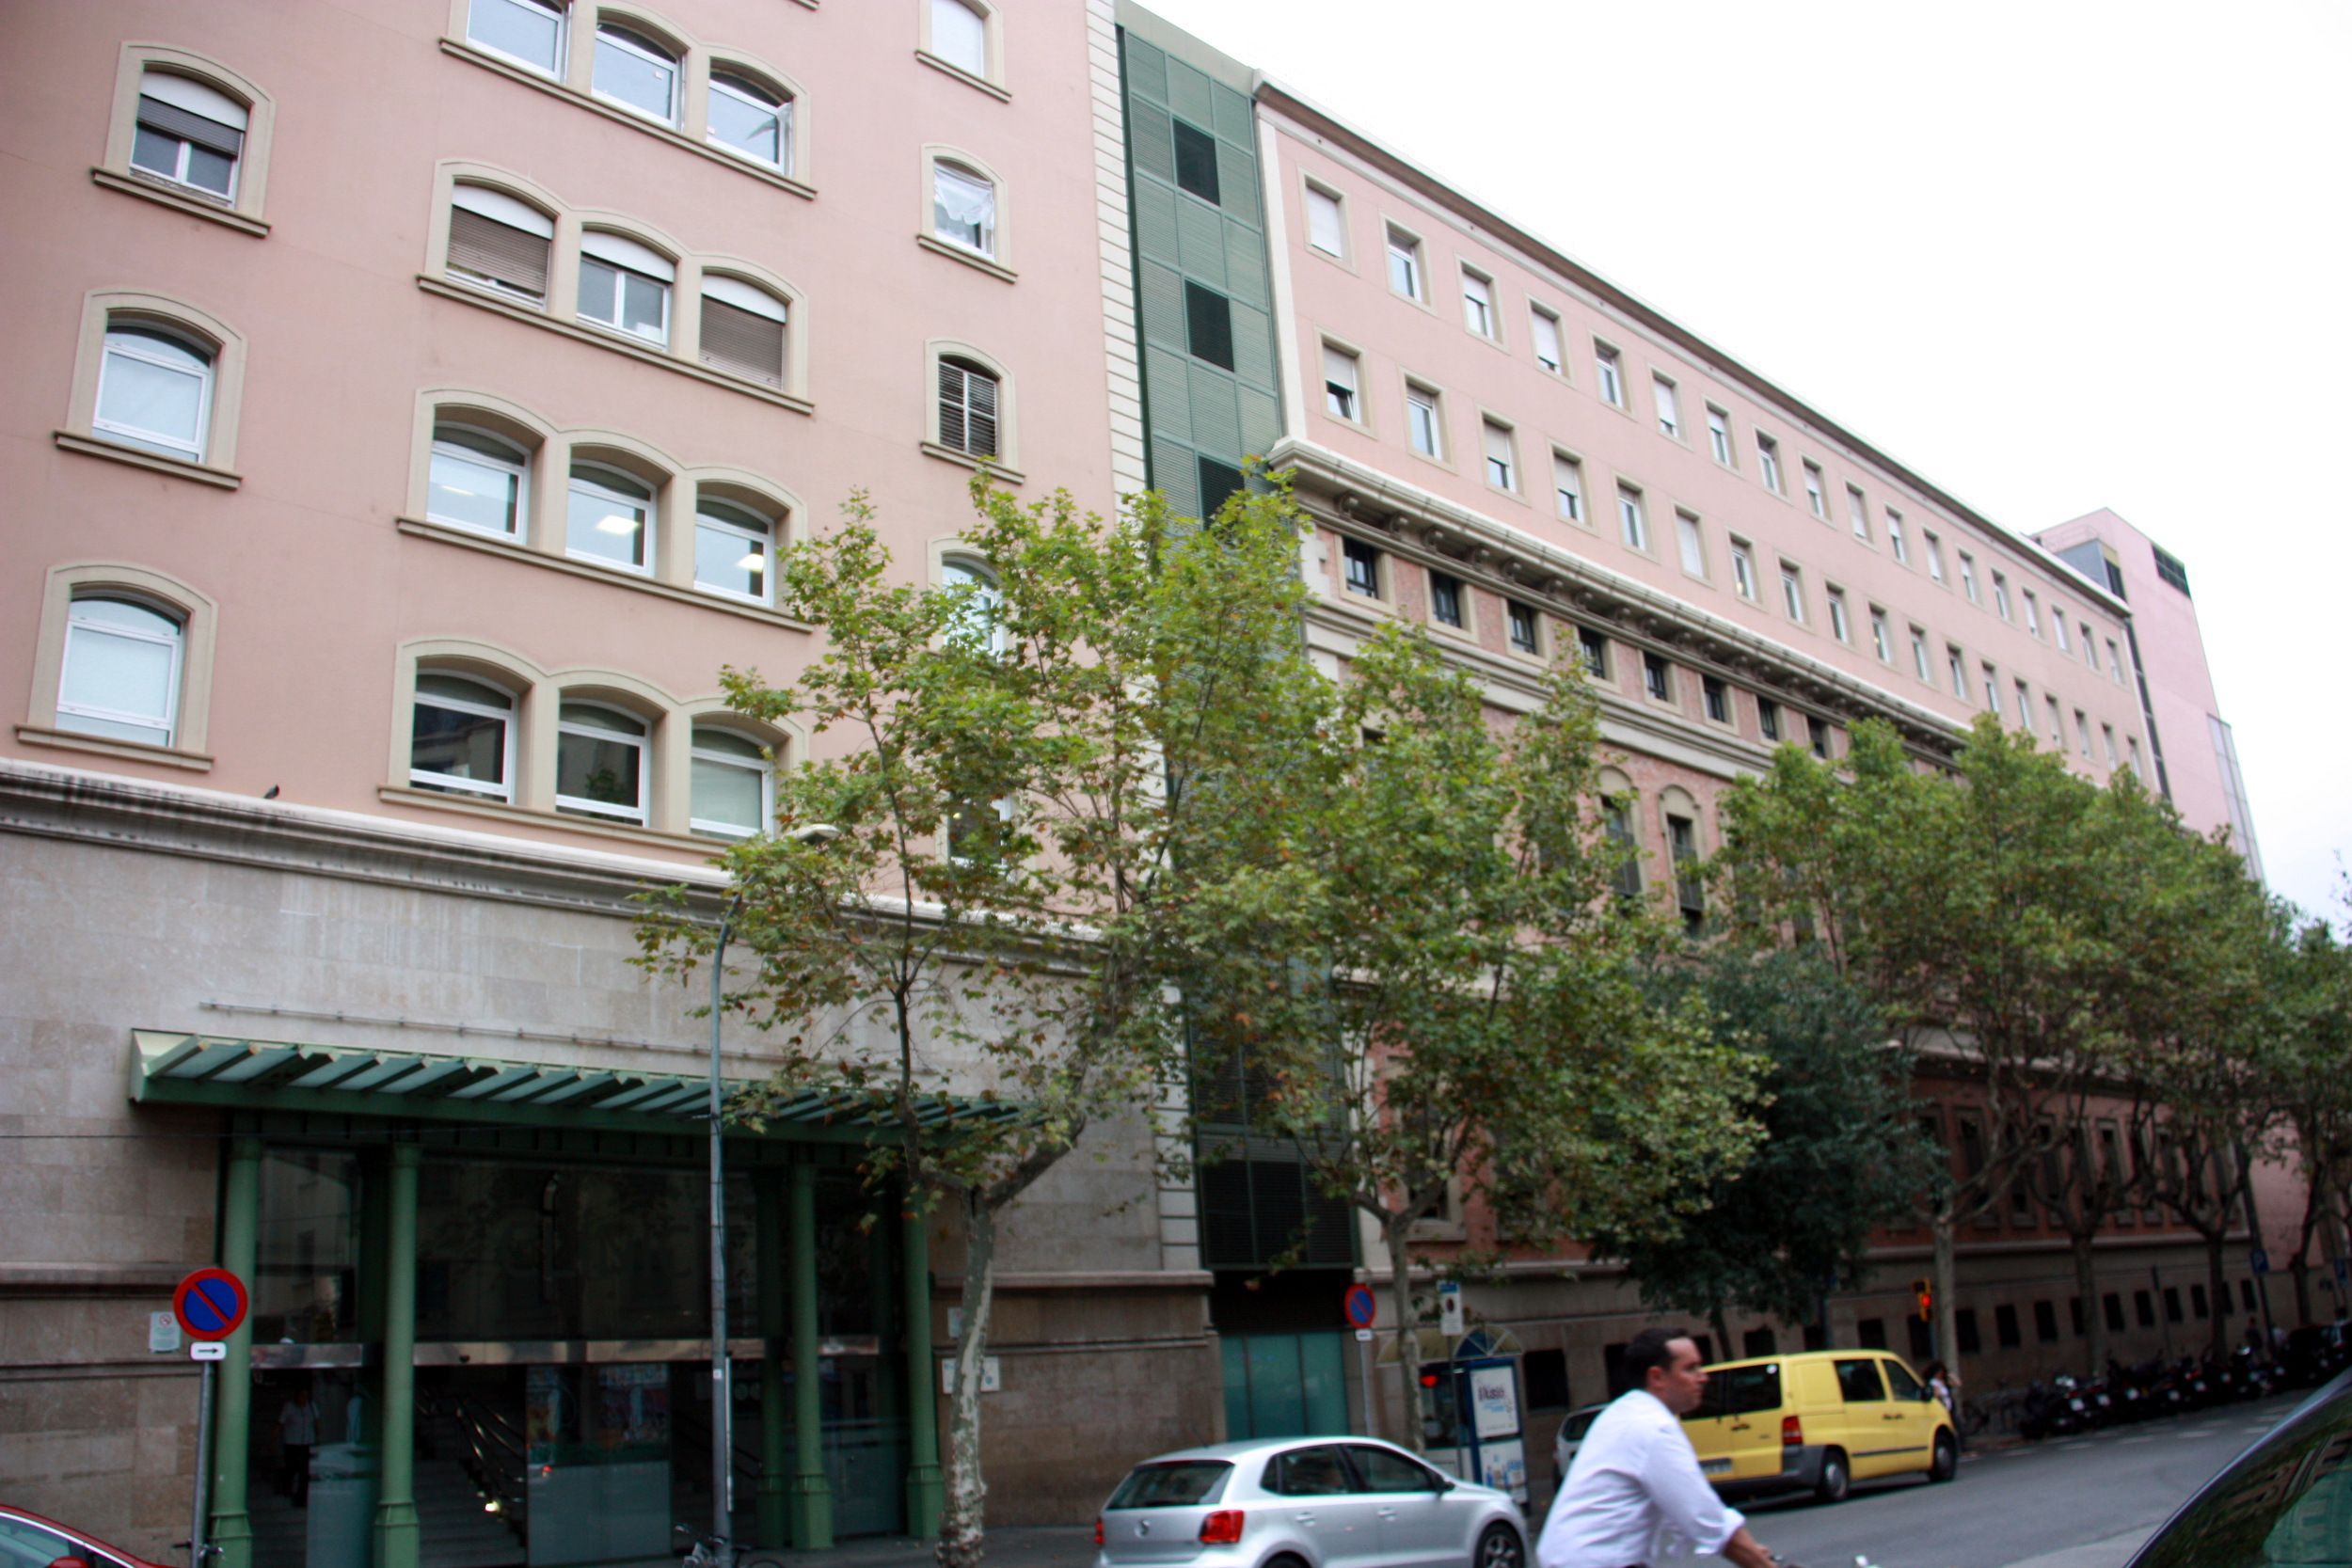 Quatre hospitals catalans entre els deu més ben valorats d'Espanya, segons l'IEH